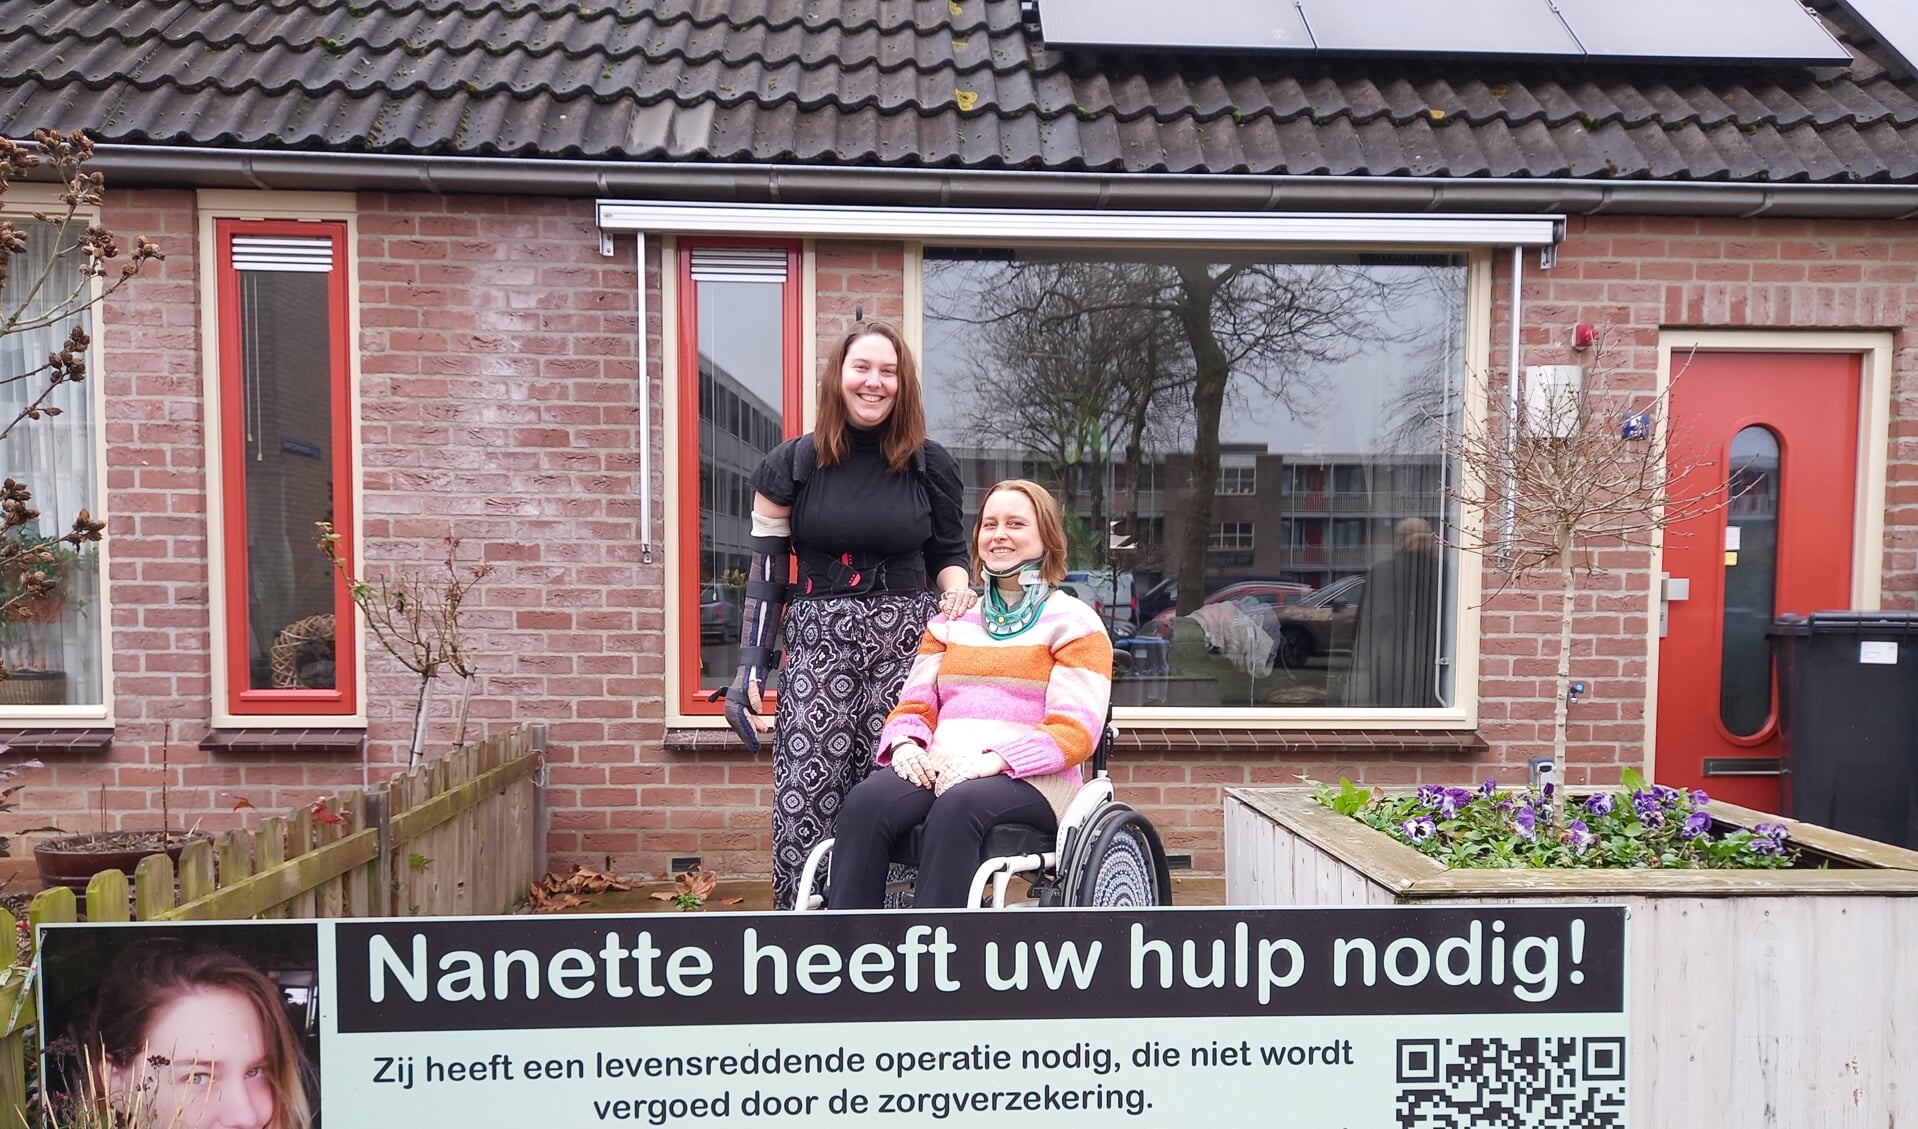 • Nanette Bielefeld met haar vriendin en lotgenoot Antoinet van Herpen.